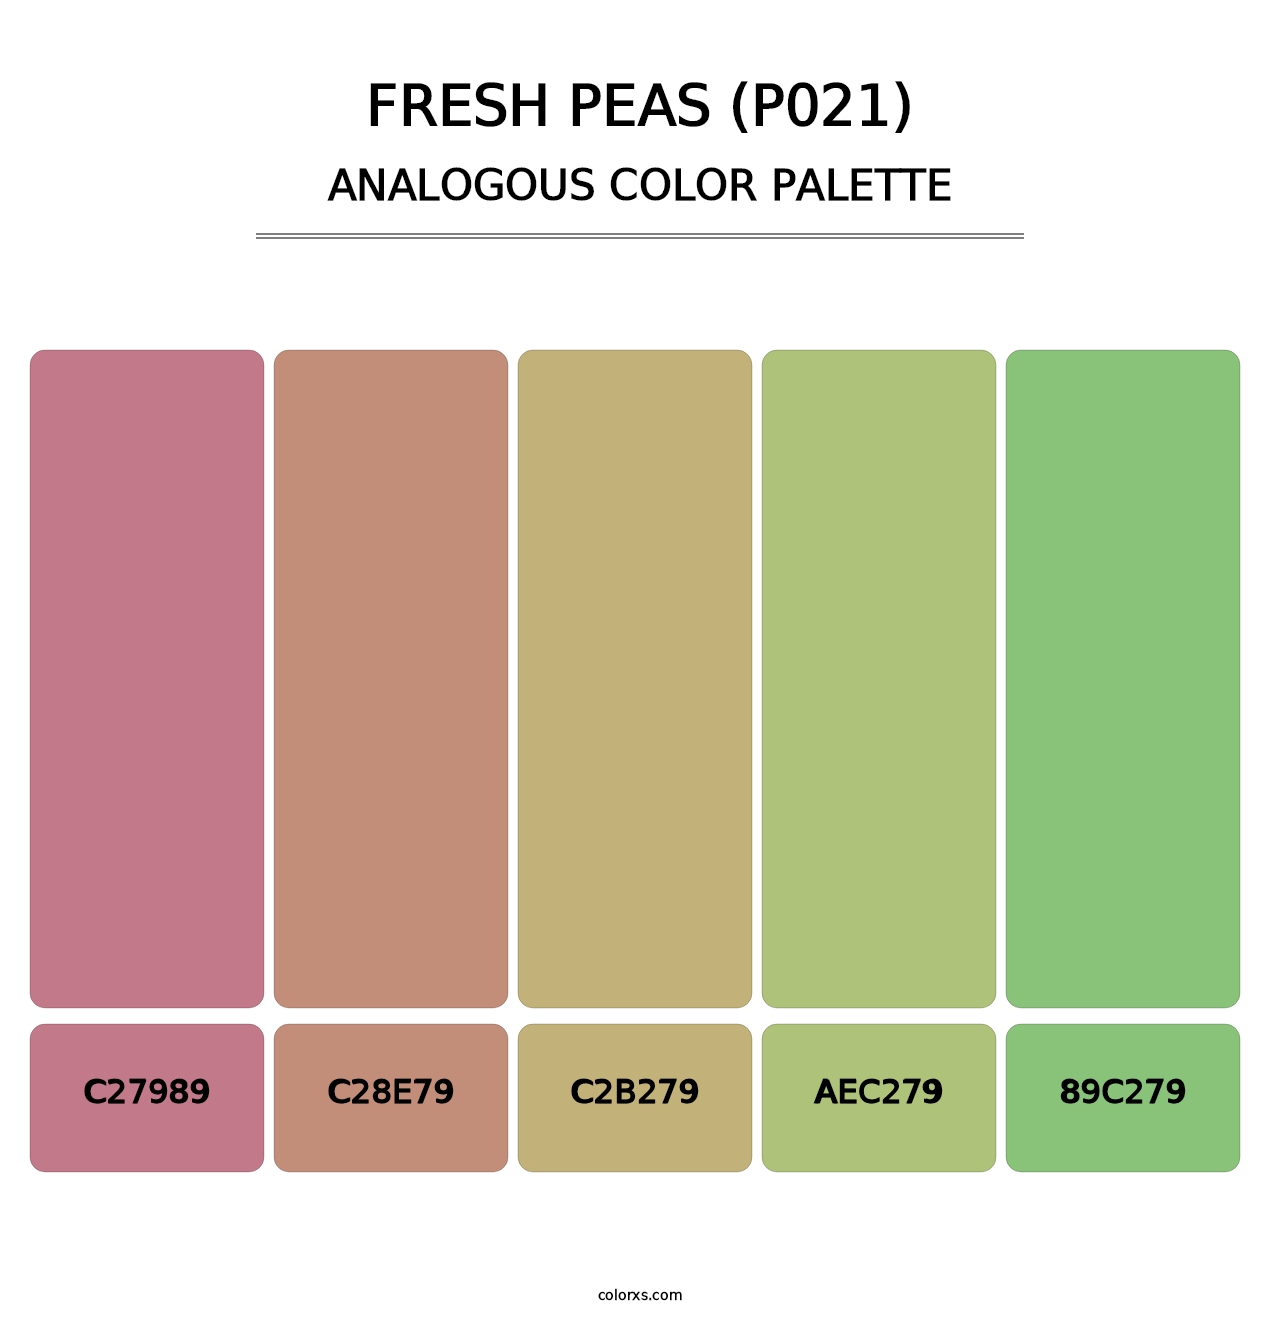 Fresh Peas (P021) - Analogous Color Palette